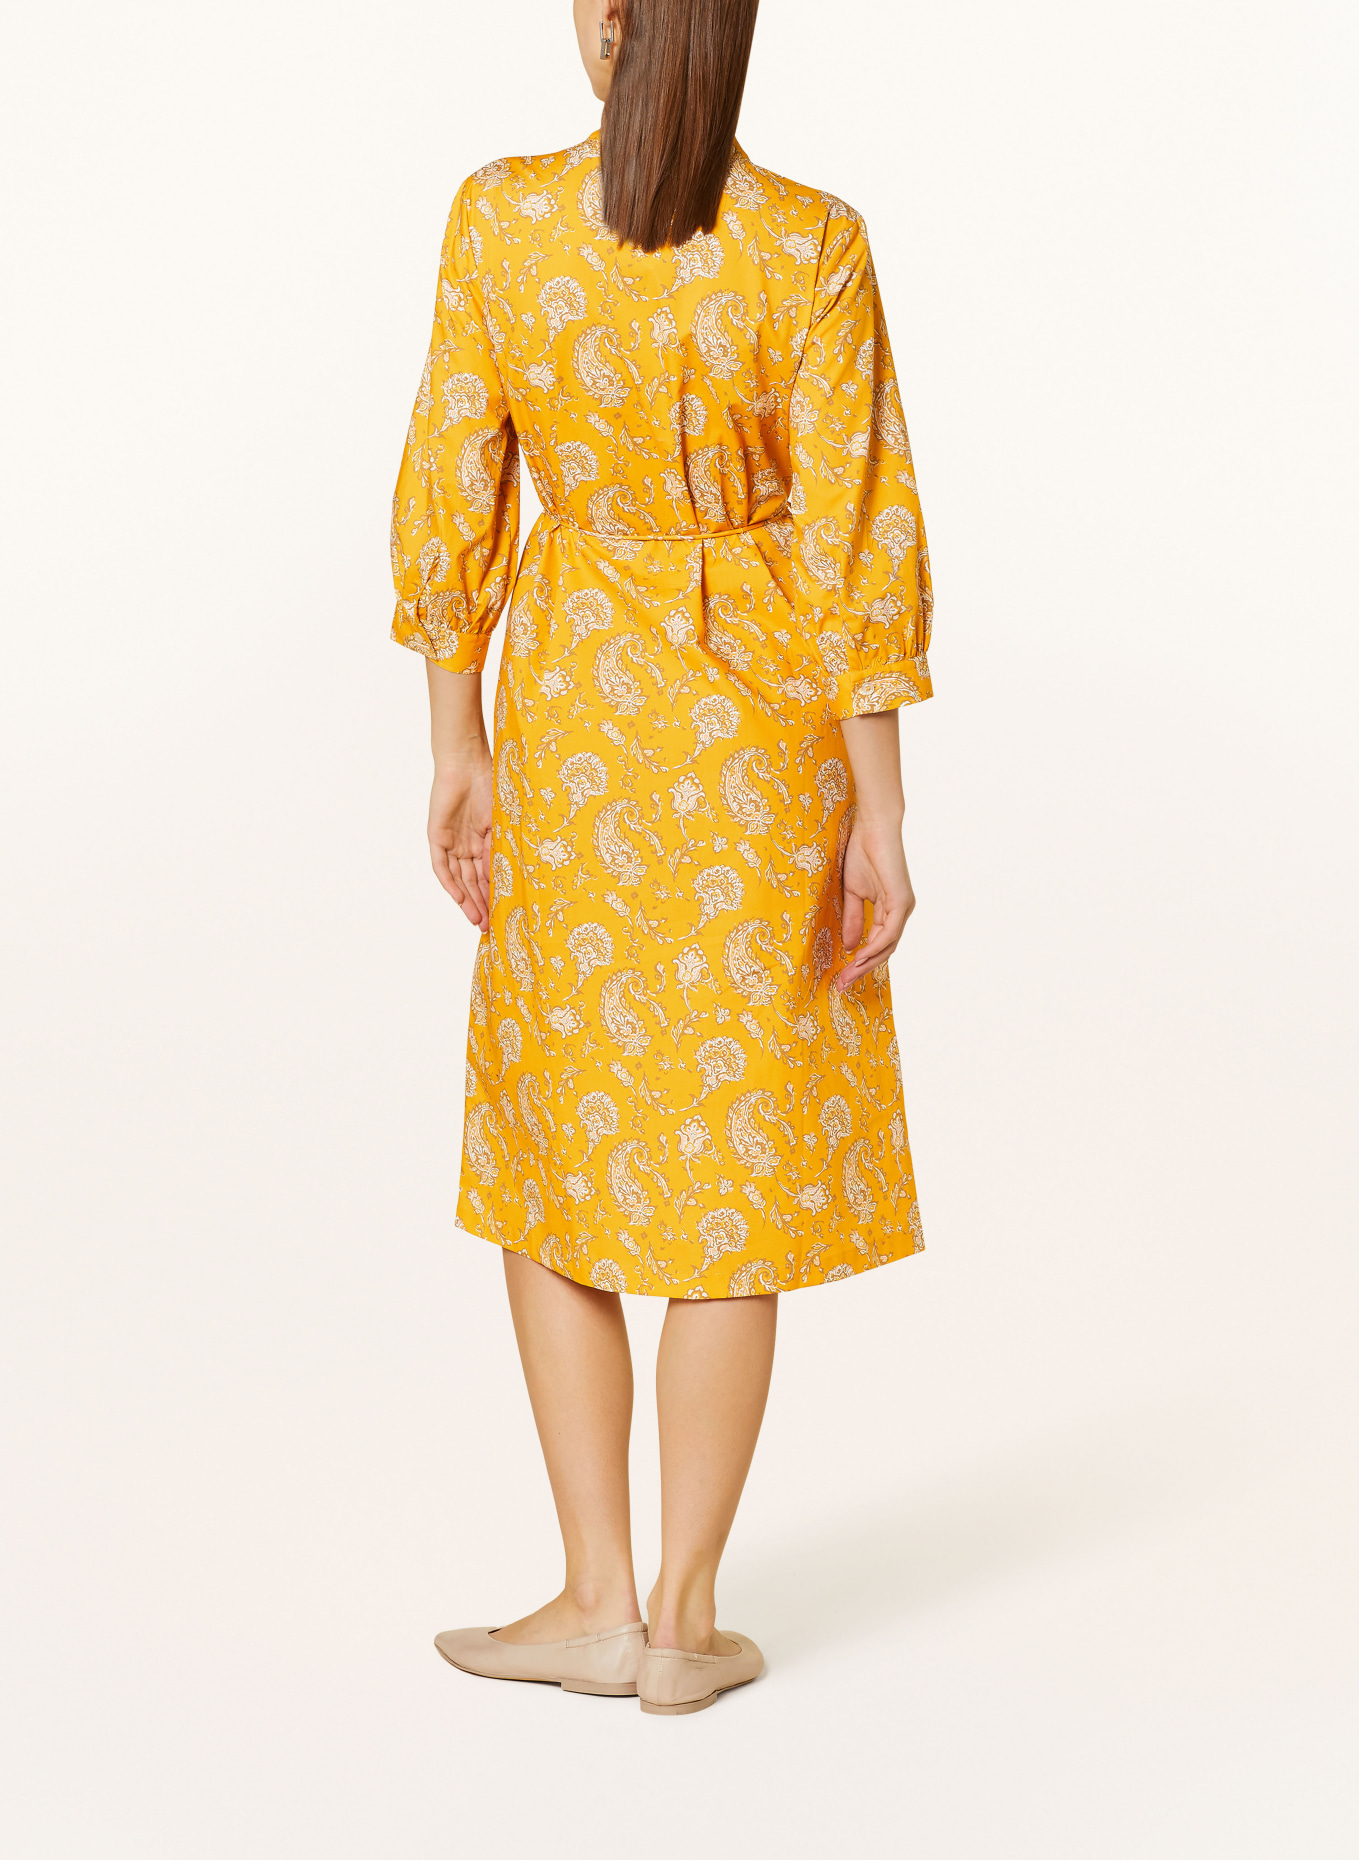 MAERZ MUENCHEN Hemdblusenkleid mit 3/4-Arm, Farbe: GELB/ WEISS/ BRAUN (Bild 3)